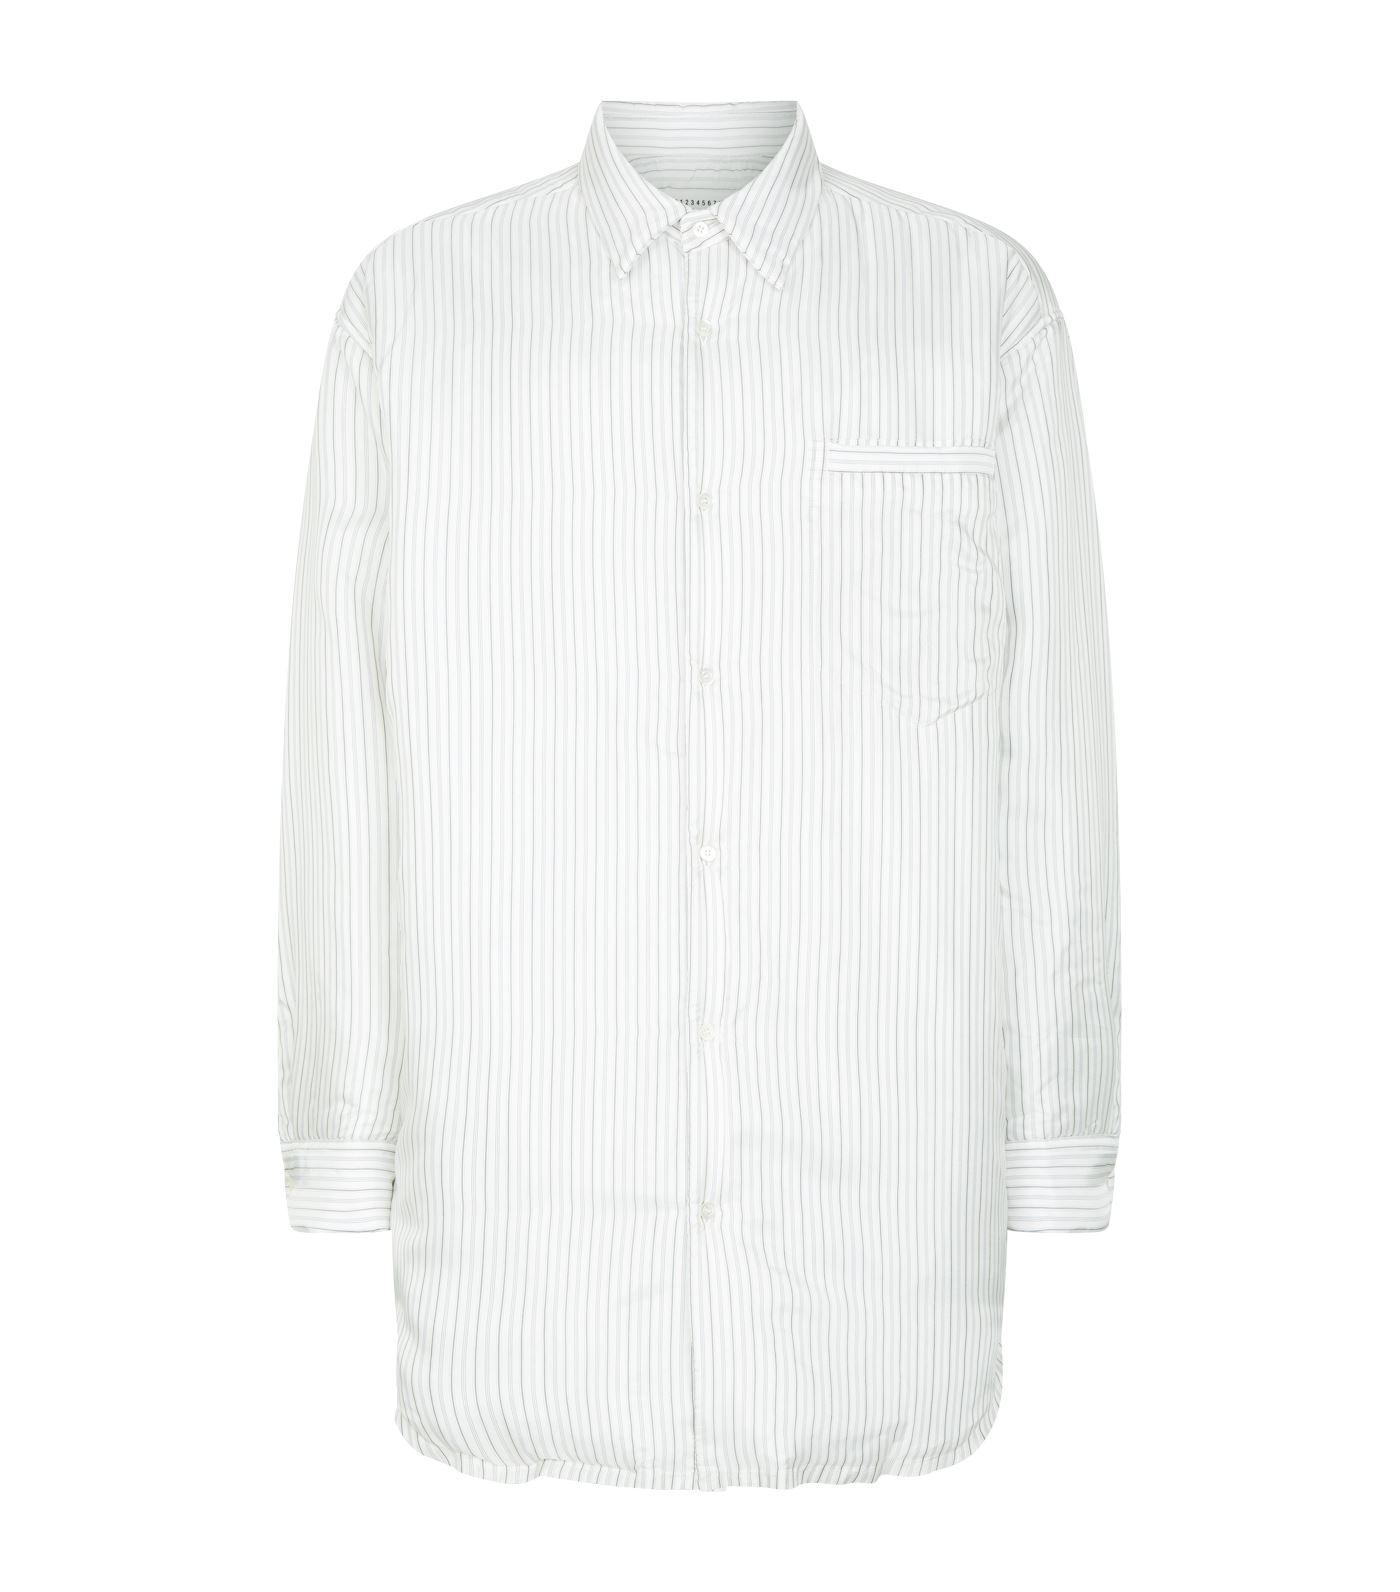 Maison Margiela Oversized Padded Stripe Shirt in White for Men - Lyst